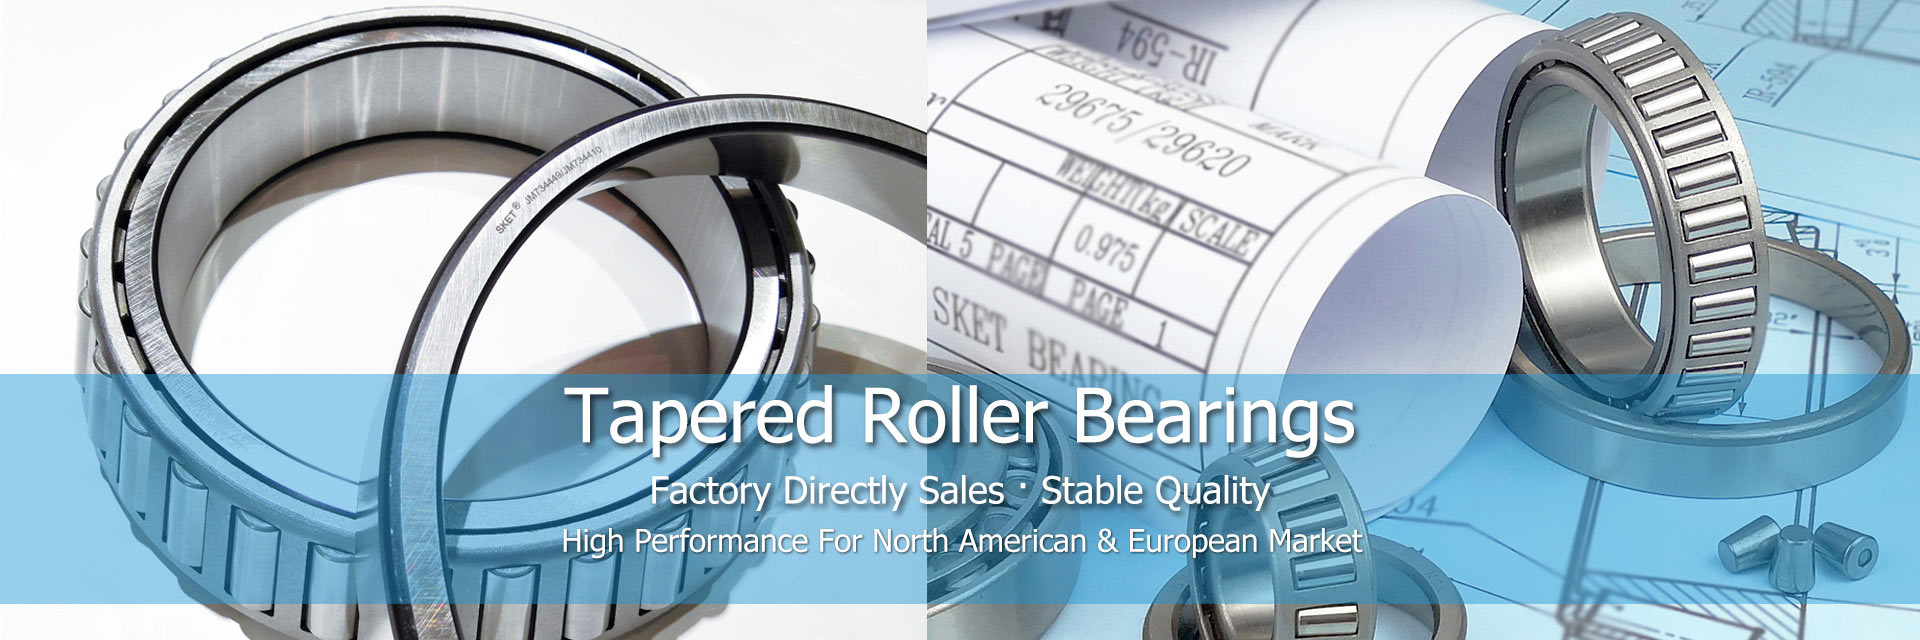 OEM quality taper roller bearing manufacturer-SKET